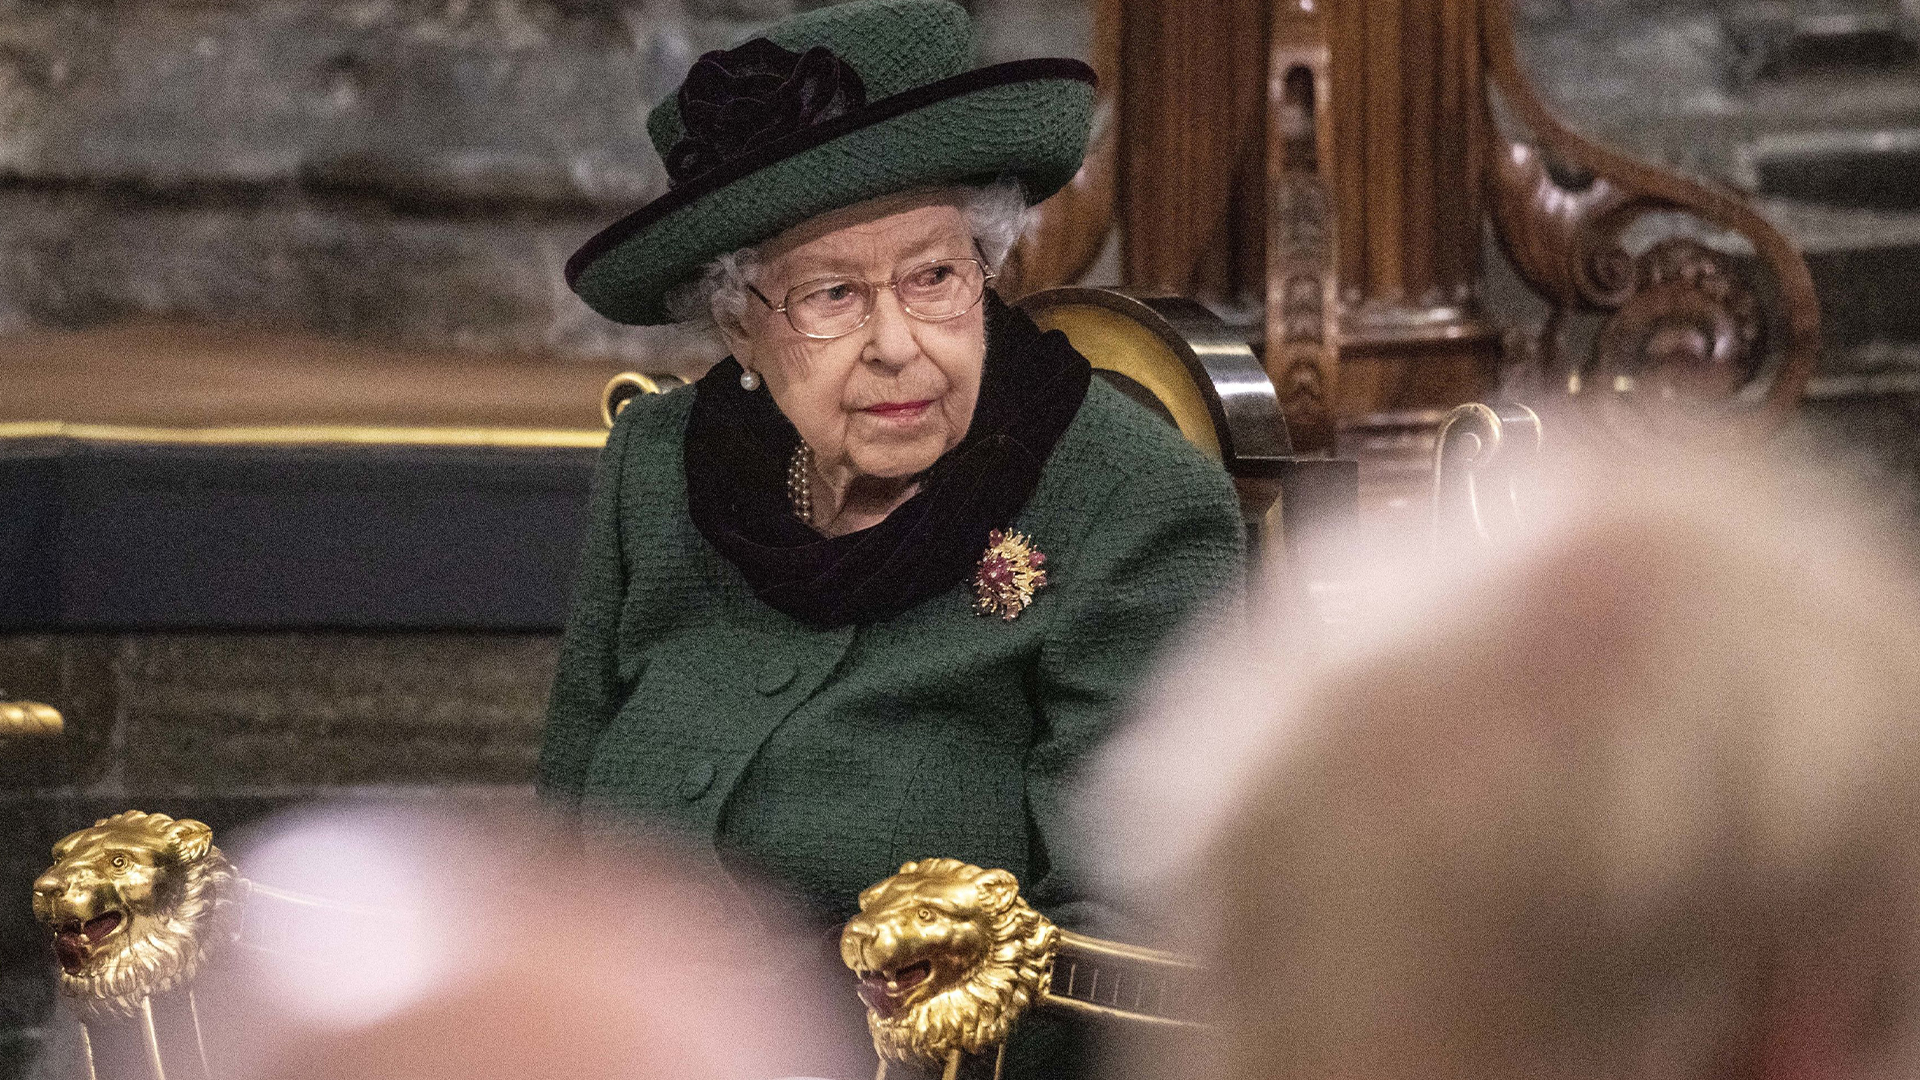 La reine Élisabeth II doit présenter ses excuses pour aider les survivants des pensionnats fédéraux et leurs familles dans leur processus de guérison, plaide la présidente du Ralliement national des Métis.